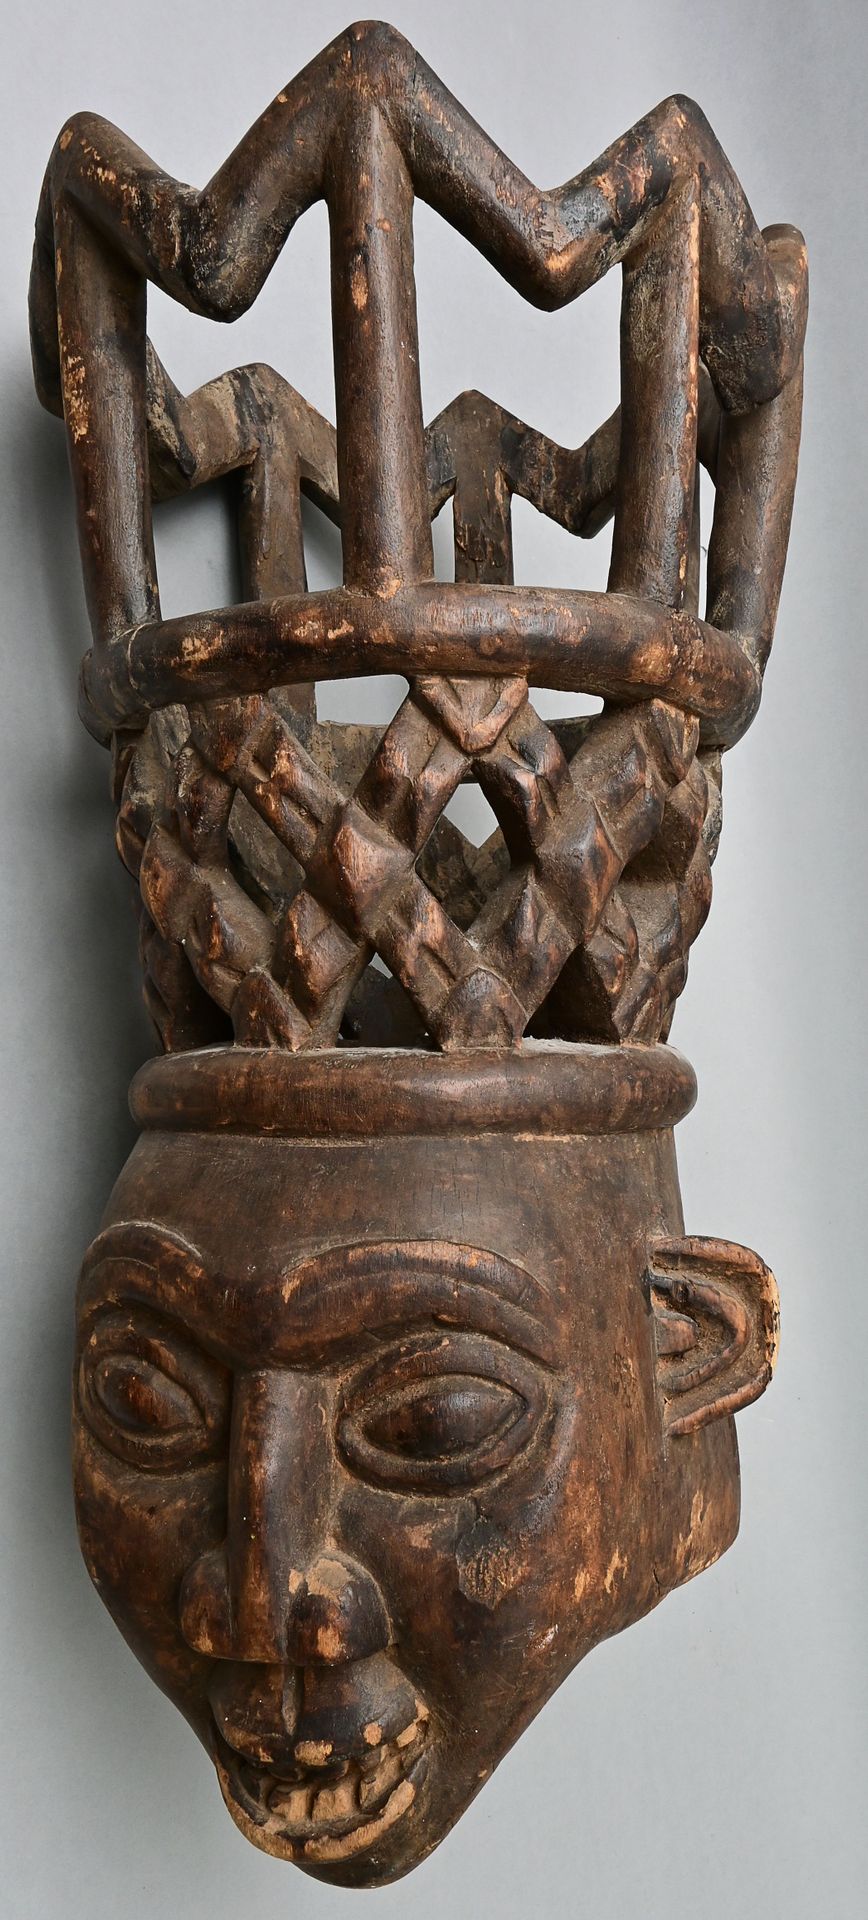 Null 喀麦隆草原的大型镶嵌面具，Bamum/Bamileke风格 拟人化的头部，带有皇冠形状的附件，木头，G型雕刻，棕色铜锈。皇冠上的老腻子。 高63厘米 &hellip;